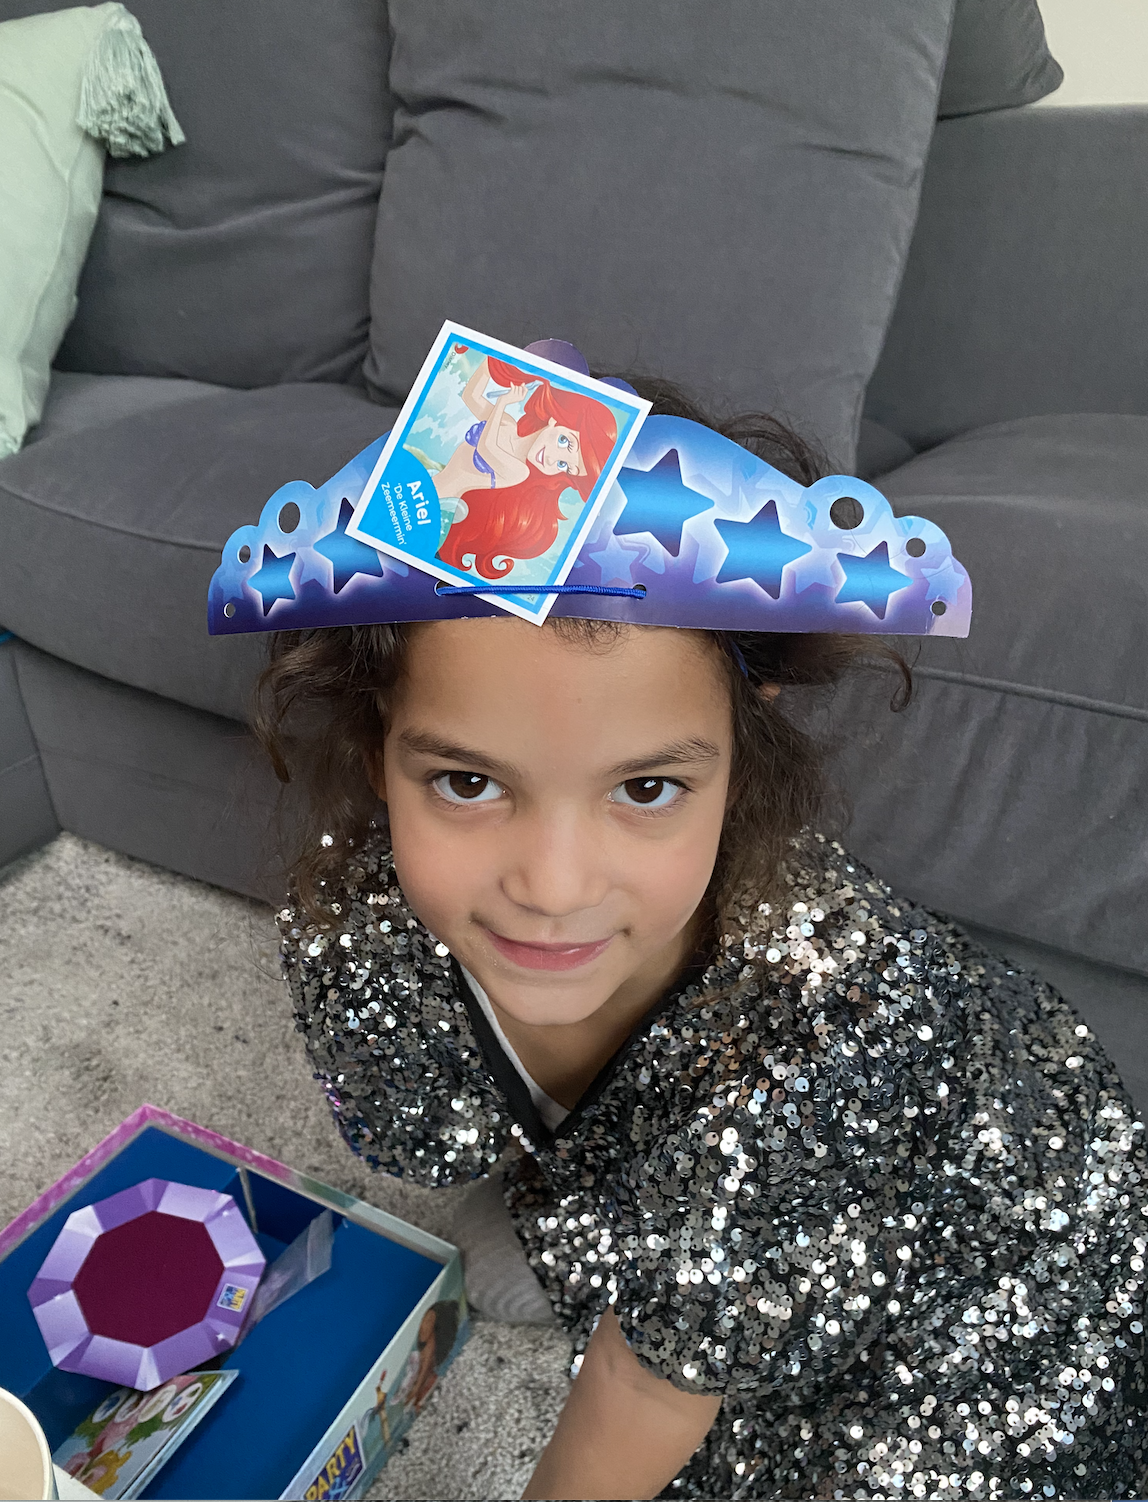 We hebben weer een ultieme speelgoedtip: Party & Co Disney Princess. Leuk om samen te spelen en aan iemand cadeau te geven!